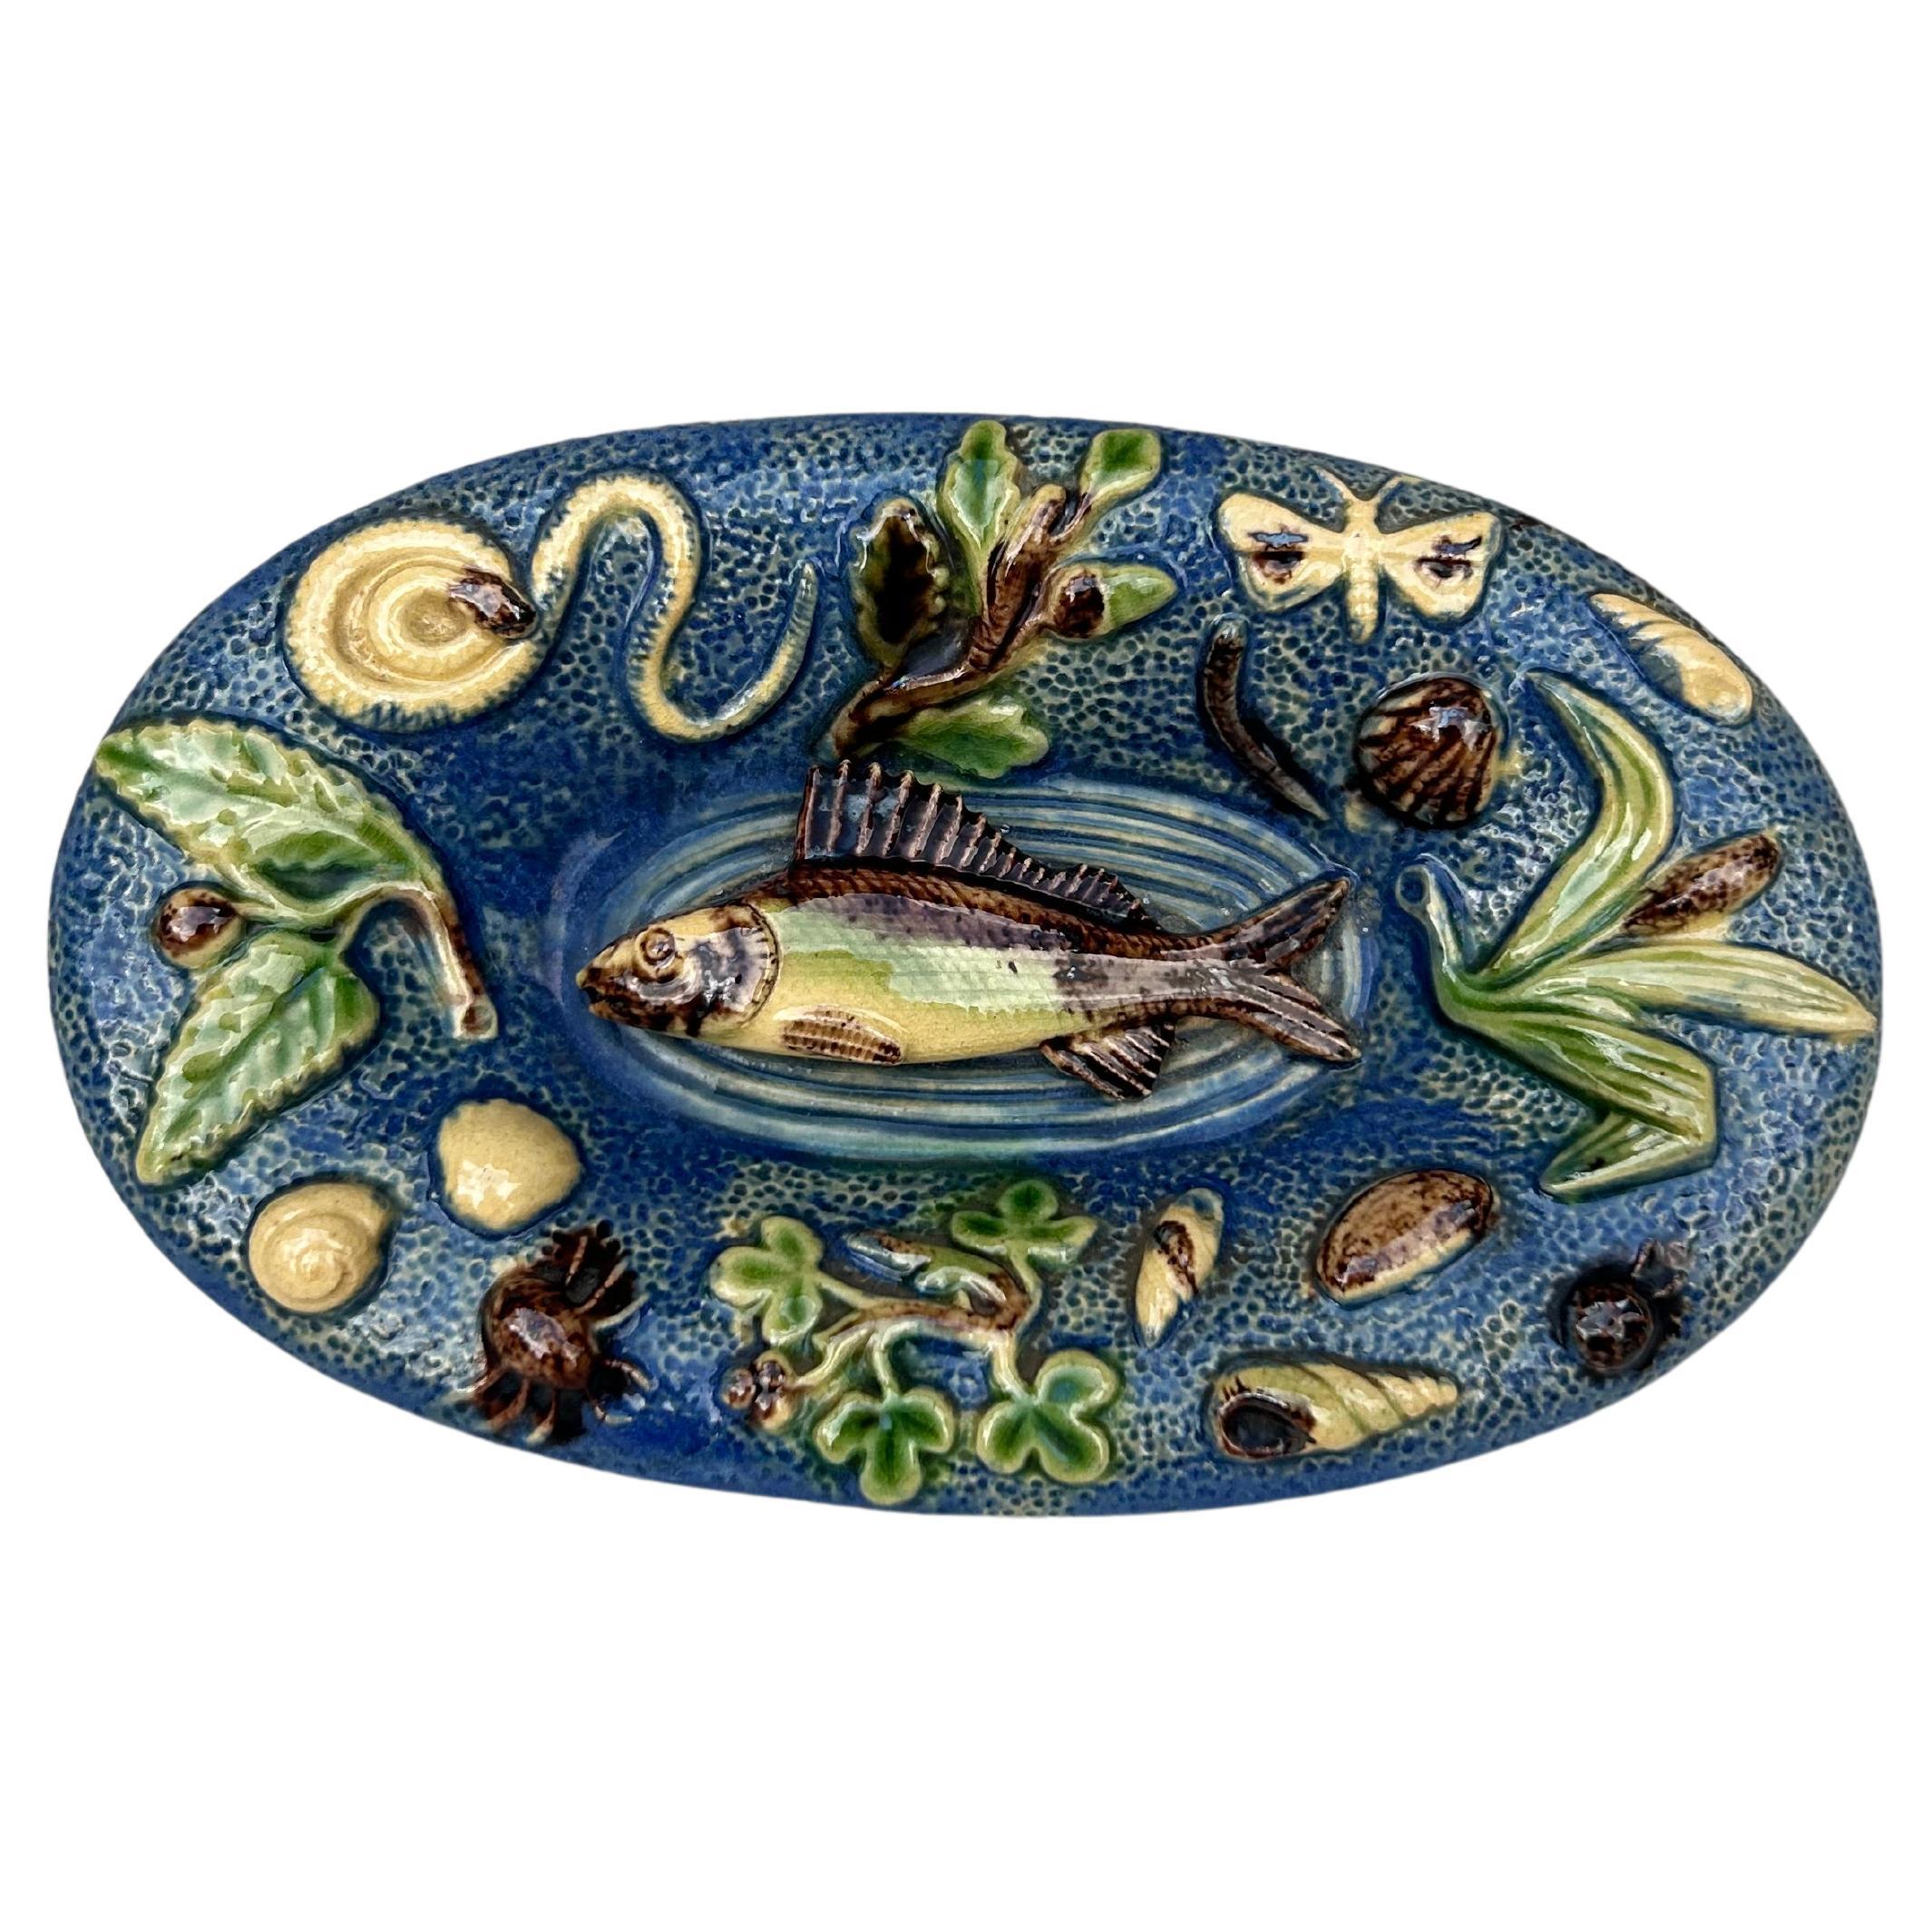 Petit plat mural en majolique Palissy du 19ème siècle avec poissons